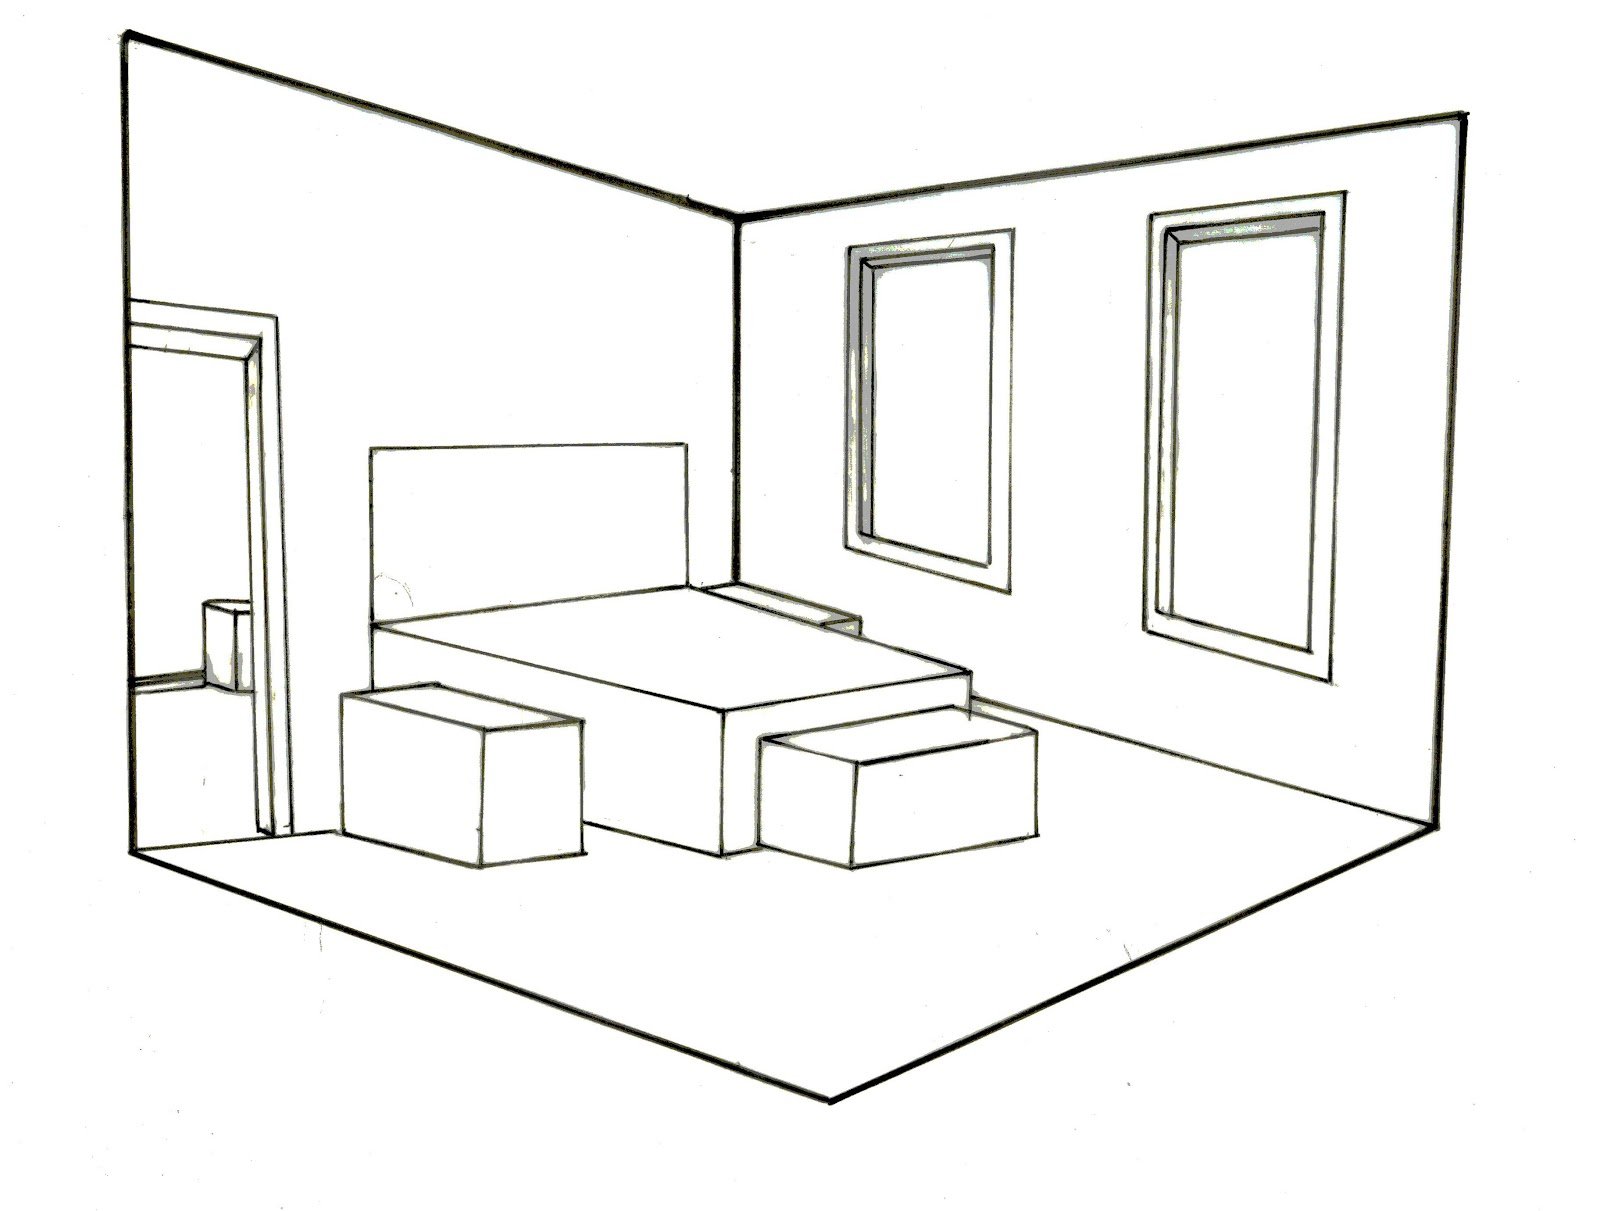 Скопировать дизайн. Интерьер комнаты чертеж. Рисование интерьера комнаты. Угловая перспектива комнаты. Чертеж комнаты в перспективе.